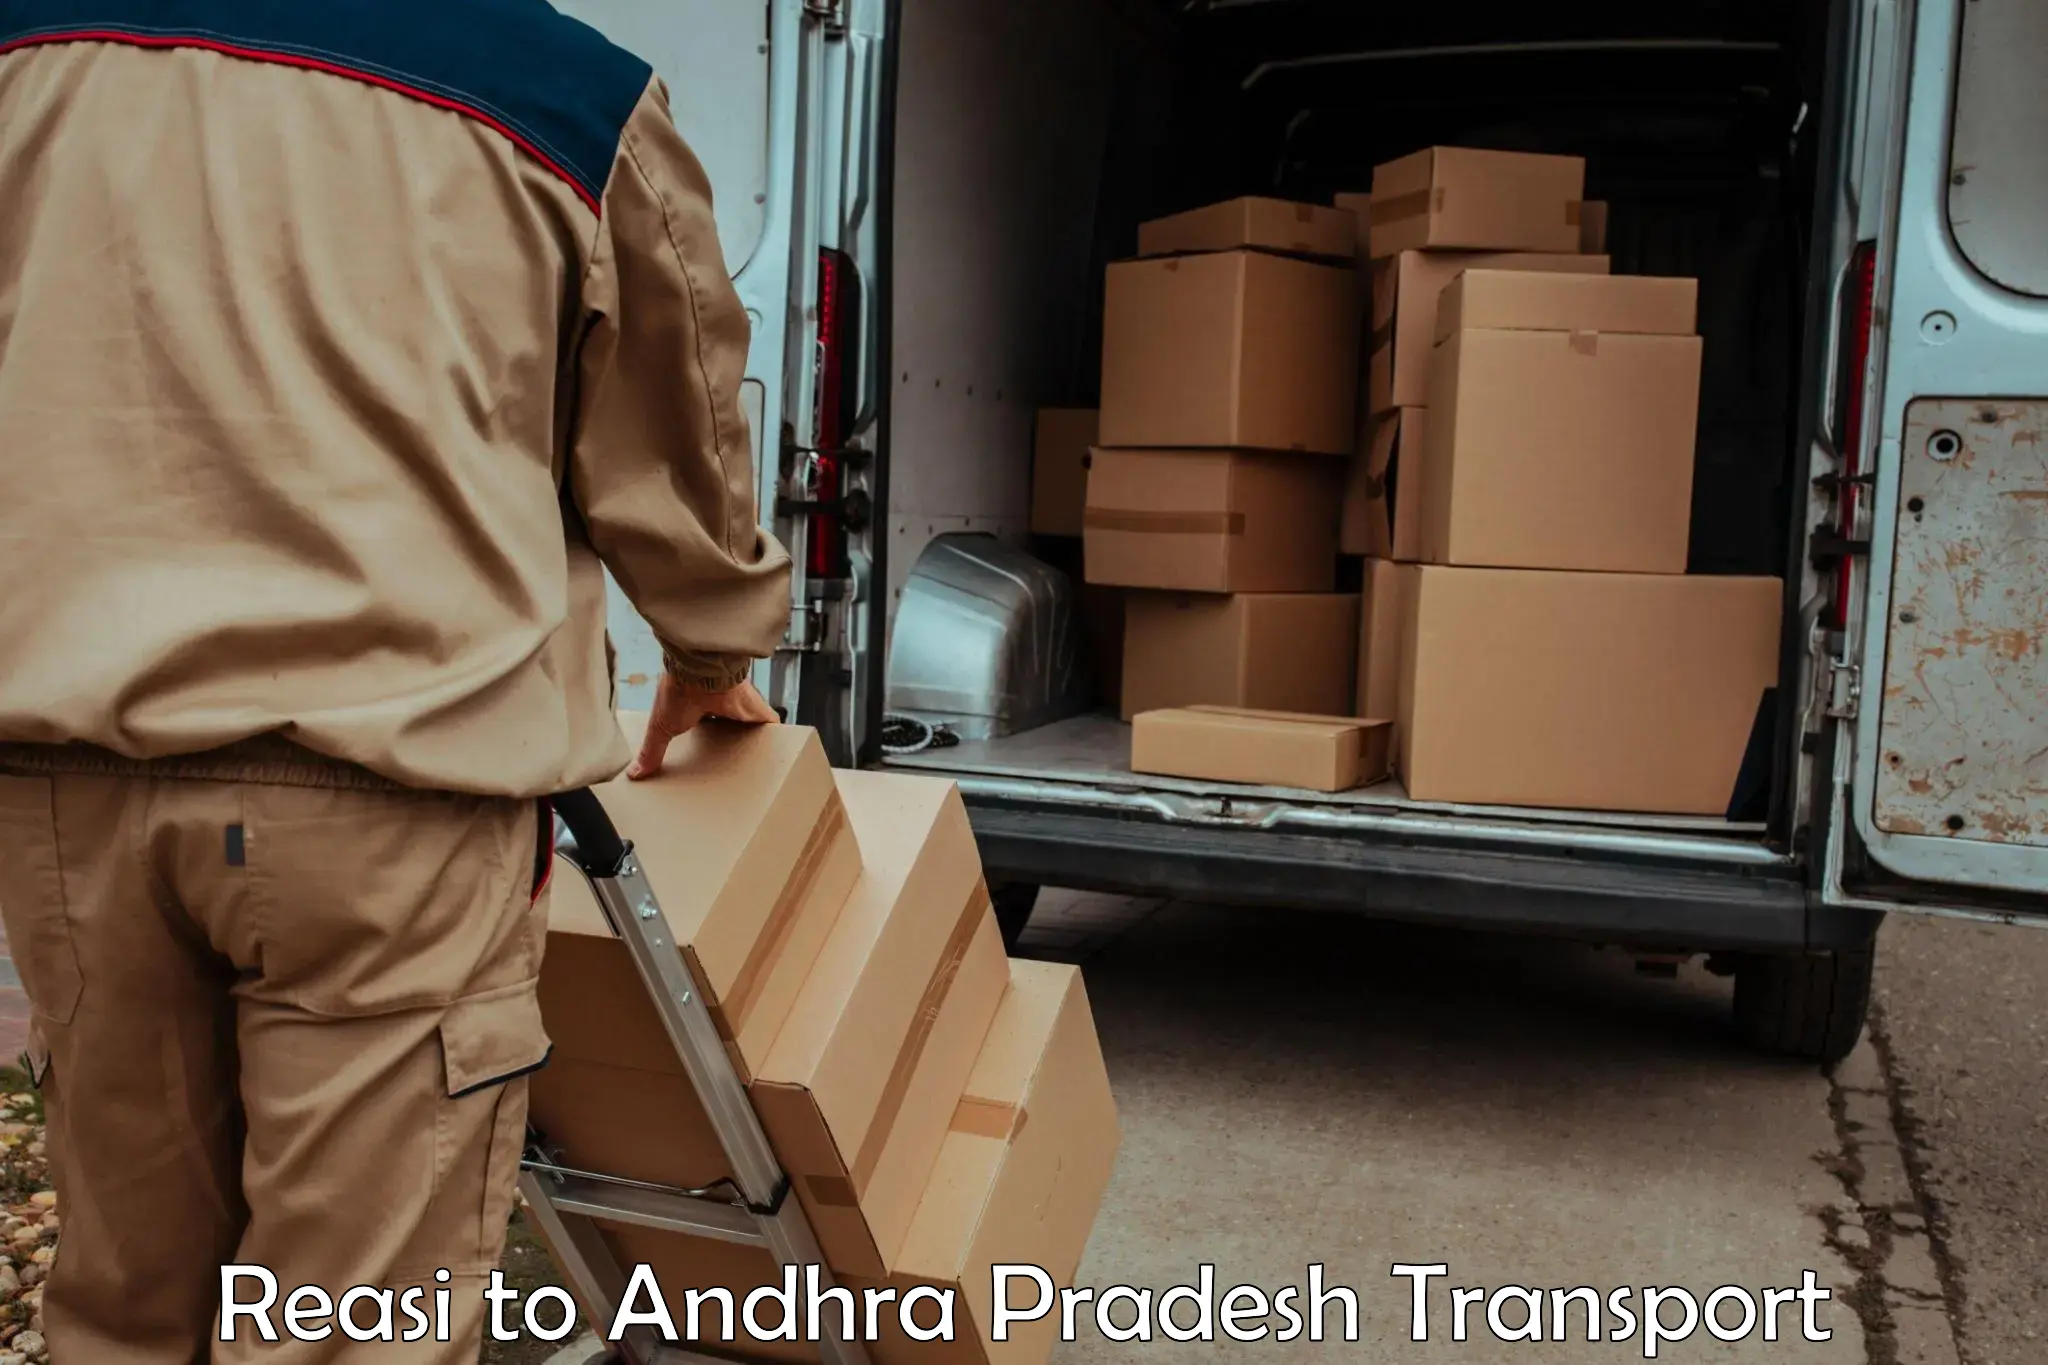 Lorry transport service Reasi to Nakkapallin